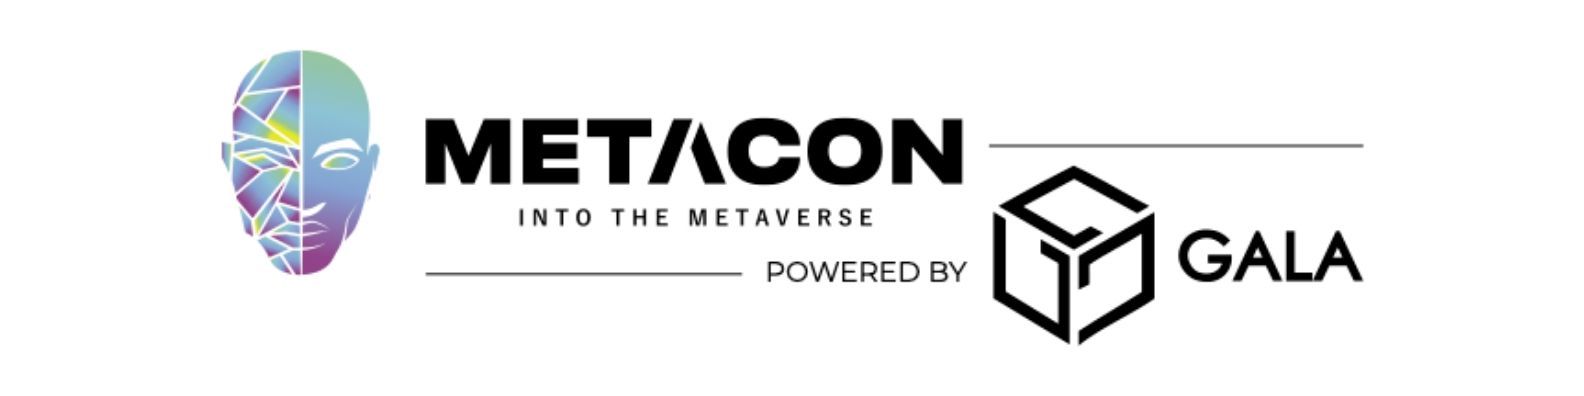 Phiên bản đầu tiên của METACON được cung cấp bởi Gala Set tại Trung tâm Thương mại Thế giới Dubai vào tháng 5 này